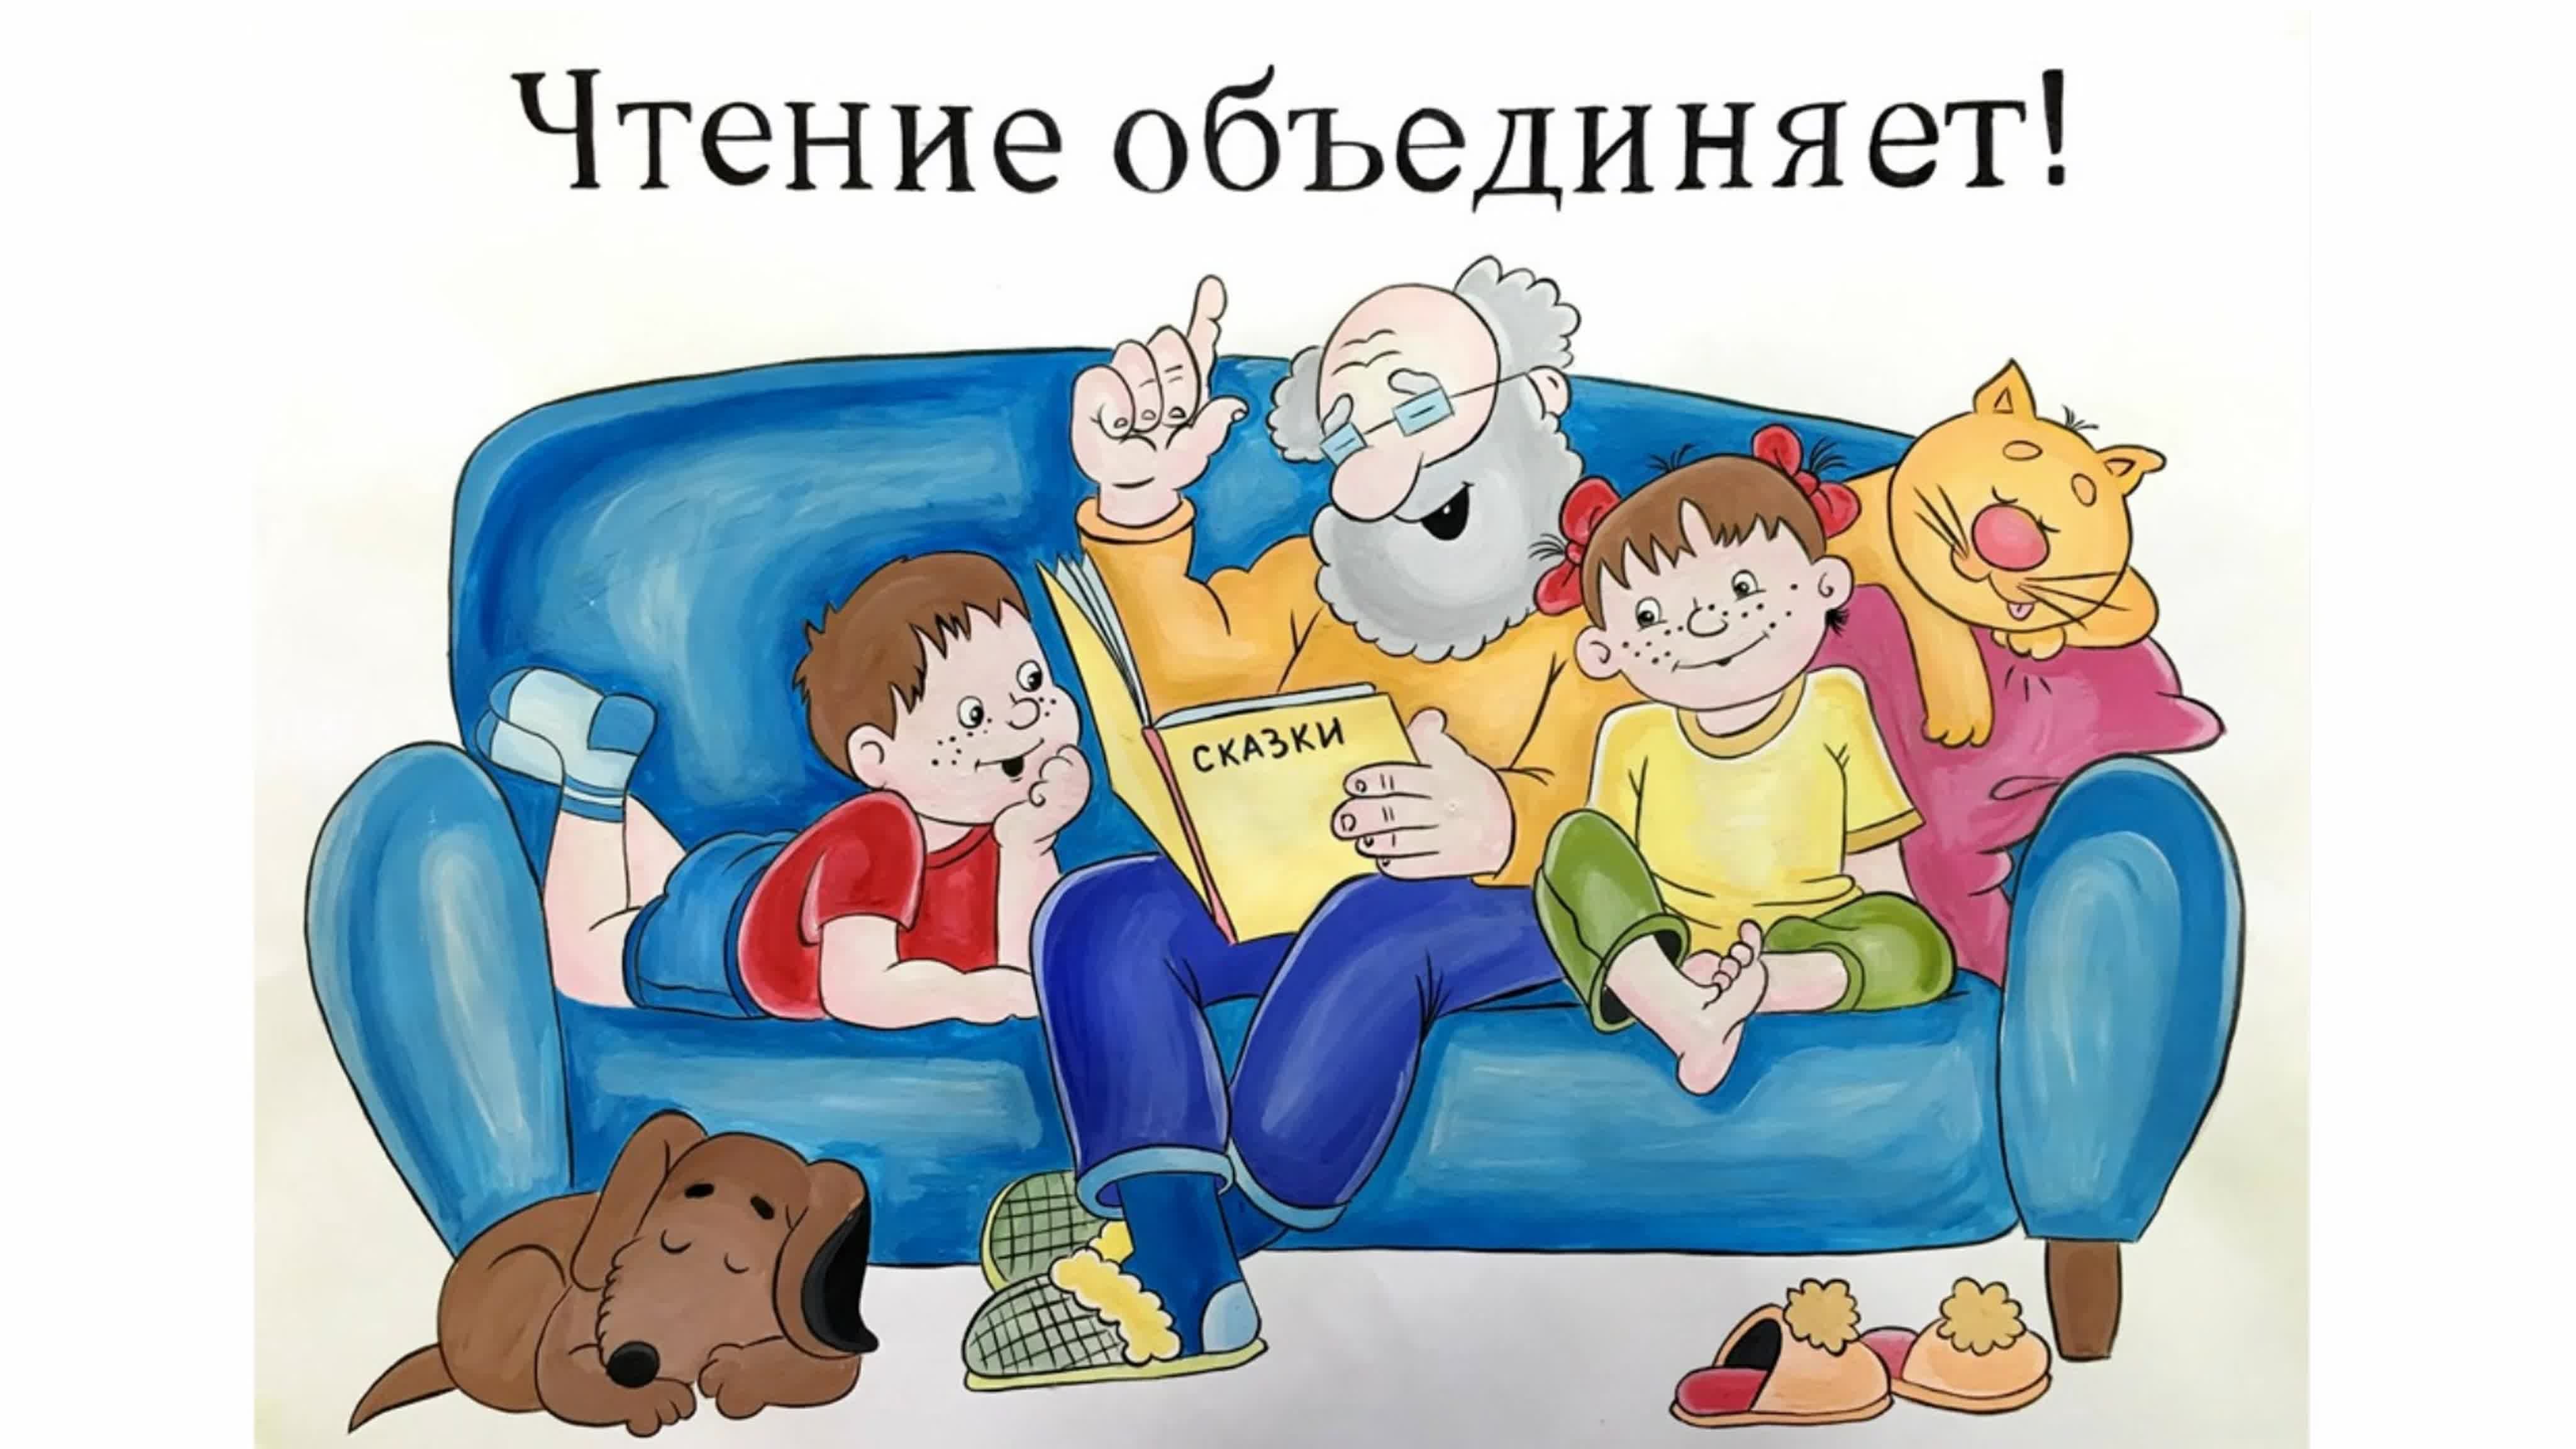 Про чтение детям сказка